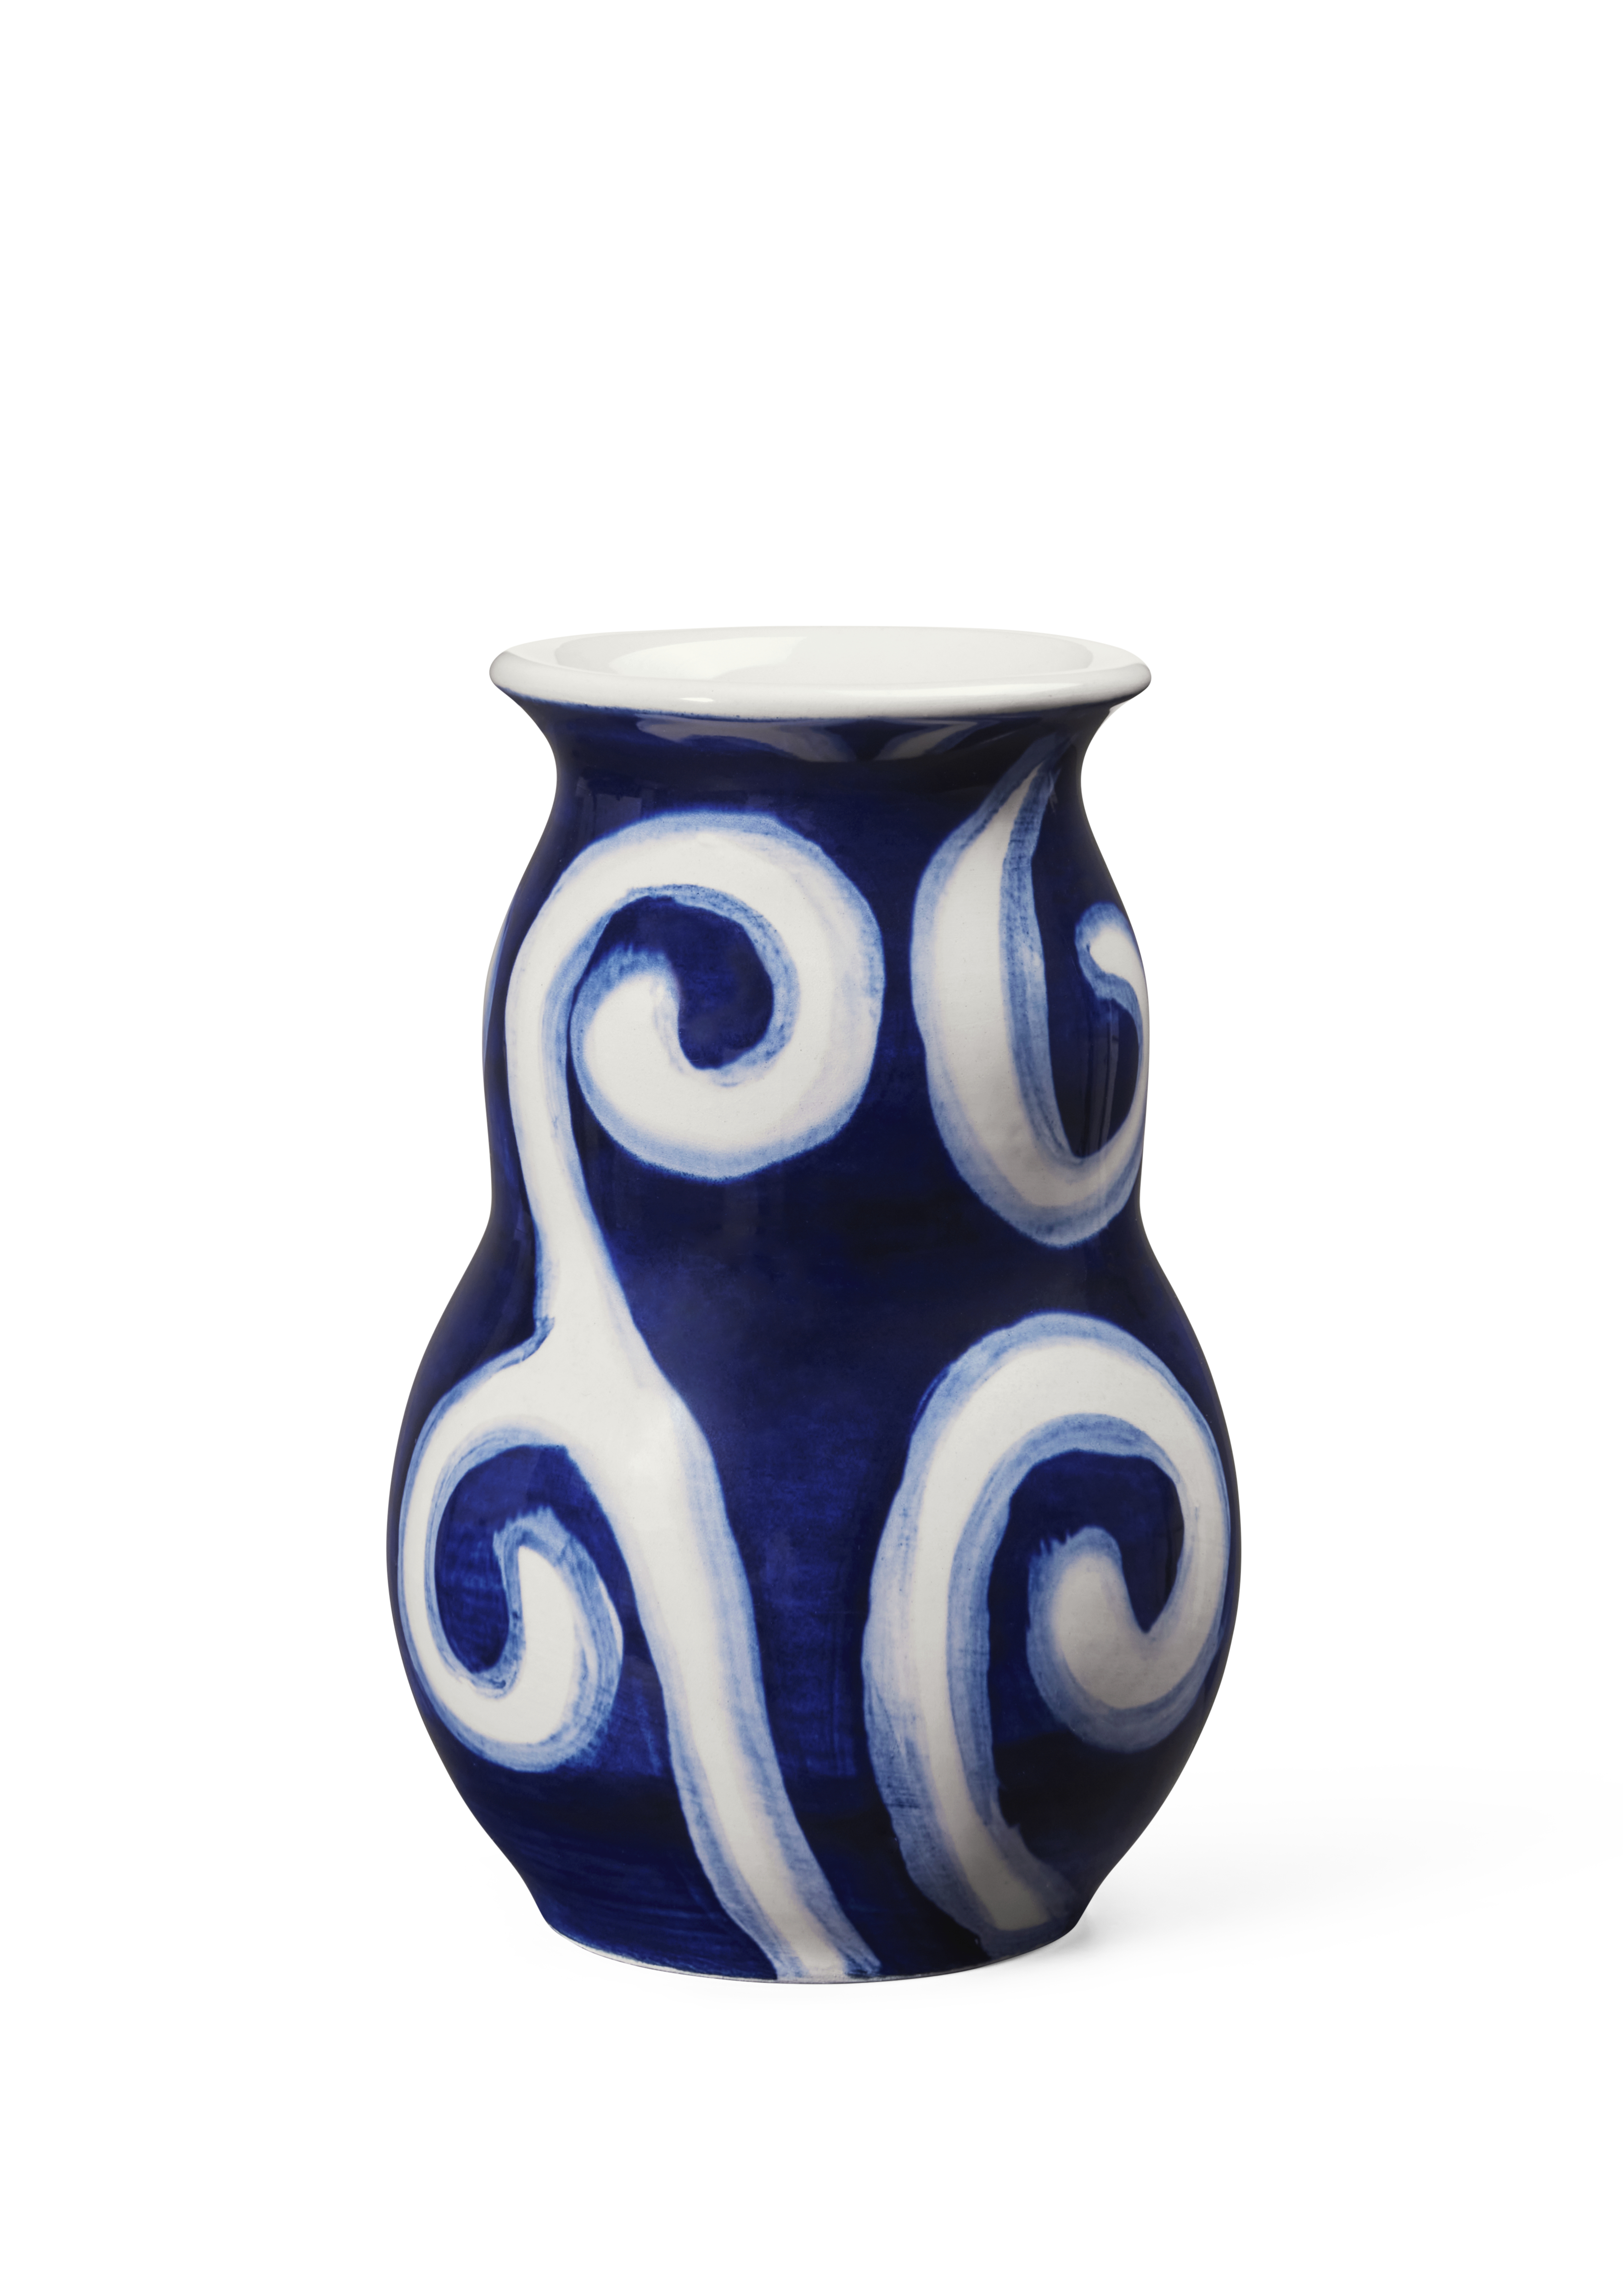 kahler-13cm-blue-ceramic-tulle-vase